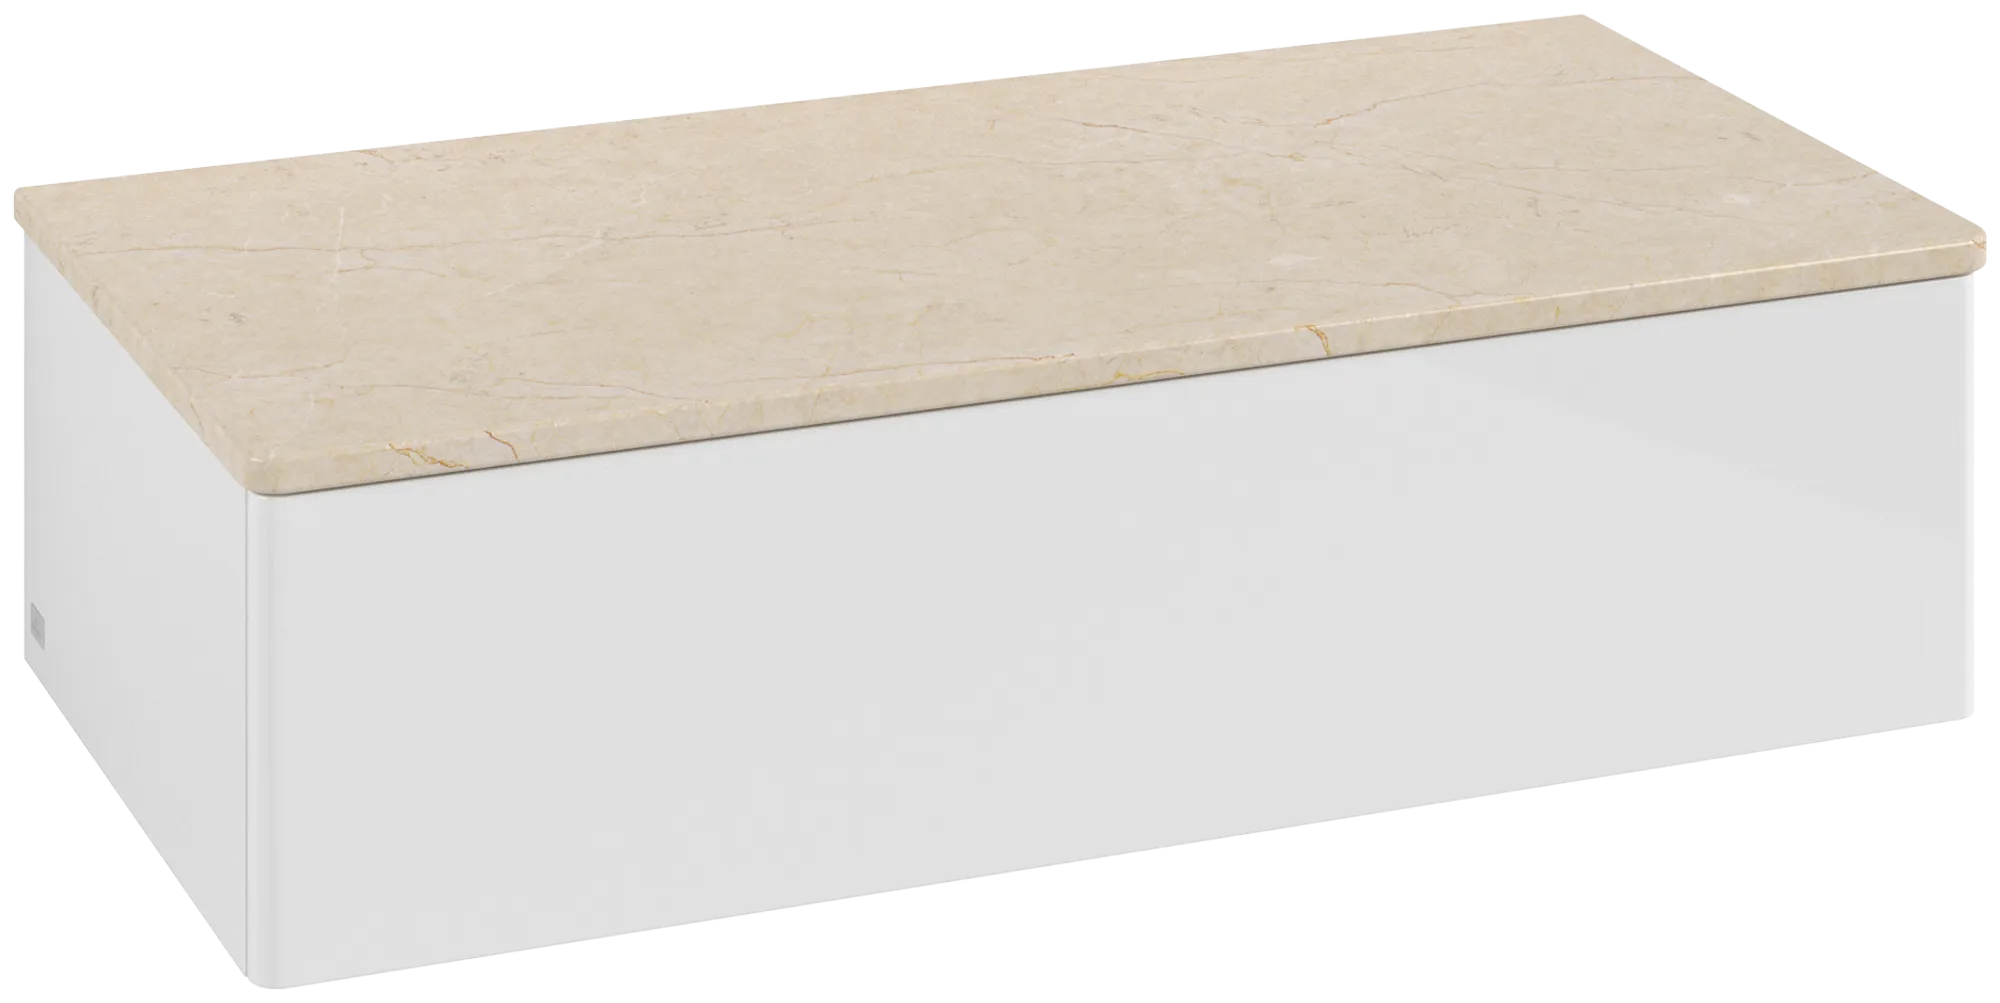 Bild von VILLEROY BOCH Antao Sideboard, 1 Auszug, 1000 x 268 x 500 mm, Front ohne Struktur, Glossy White Lacquer / Botticino #K40003GF